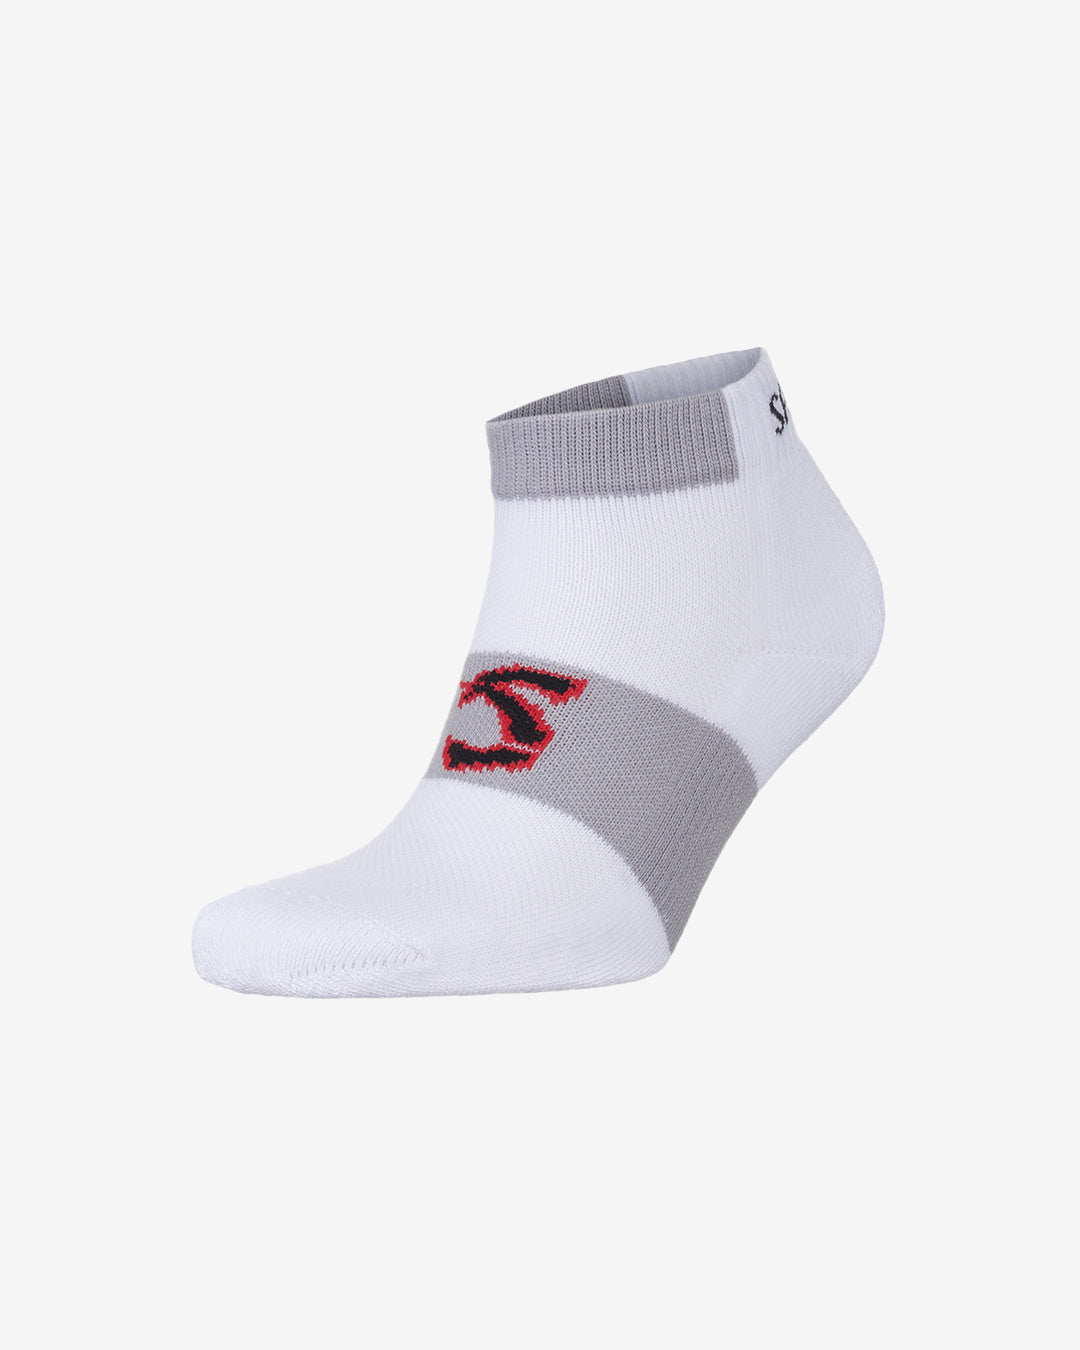 Hc: 9632 - Trainer Socks - White